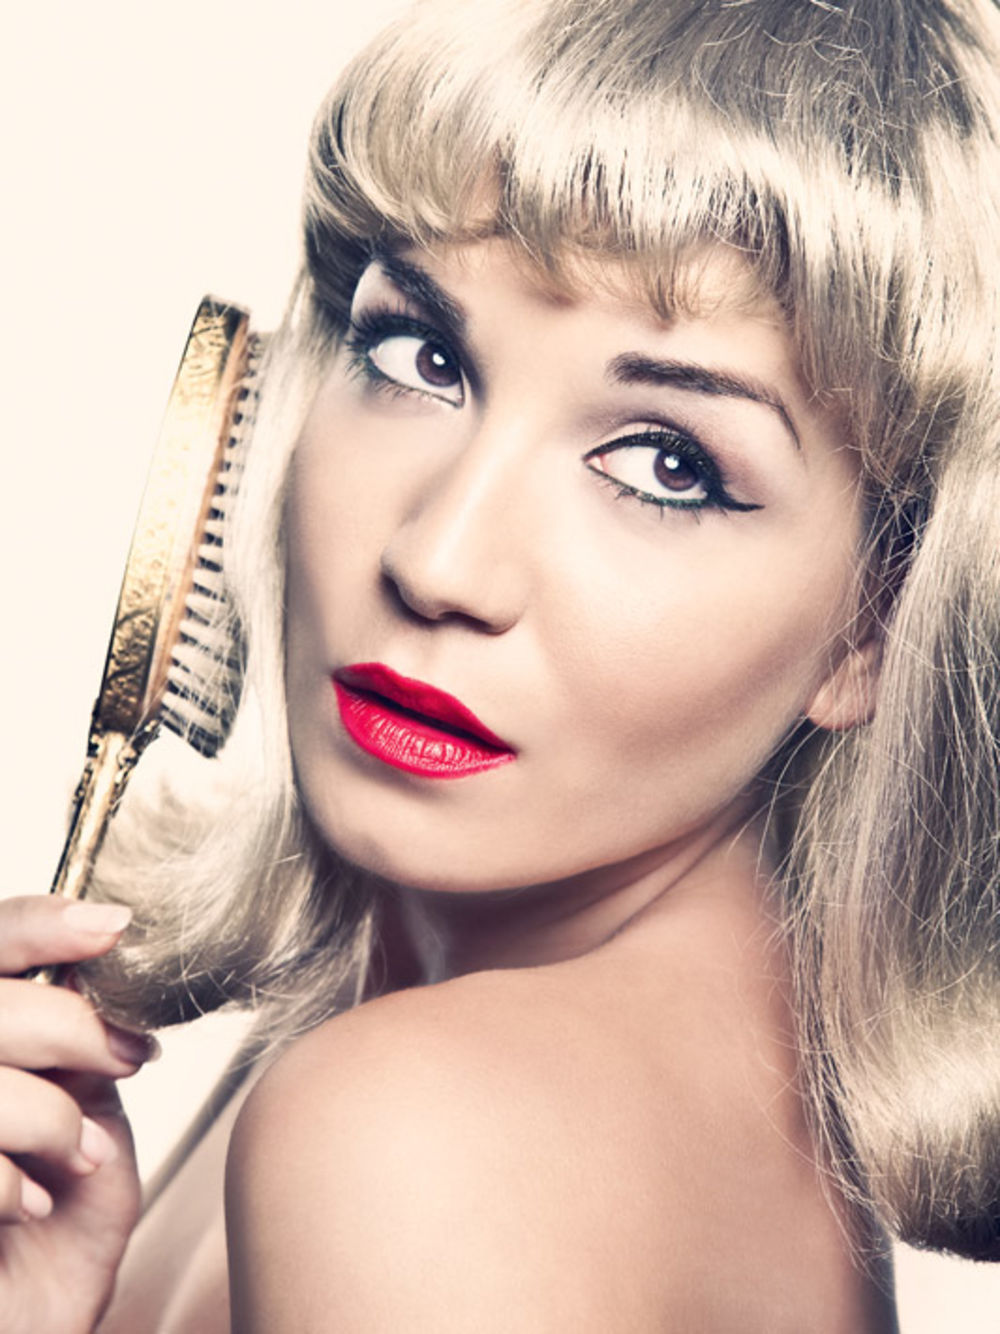 Iako pevačica Jelena Tomašević voli make up, trudi se da ne preteruje s nanošenjem šminke, smatra da su lepo uređeni nokti odraz ženstvenosti i kaže kako tajnu formulu za prirodnu boju kose zna samo njen frizer